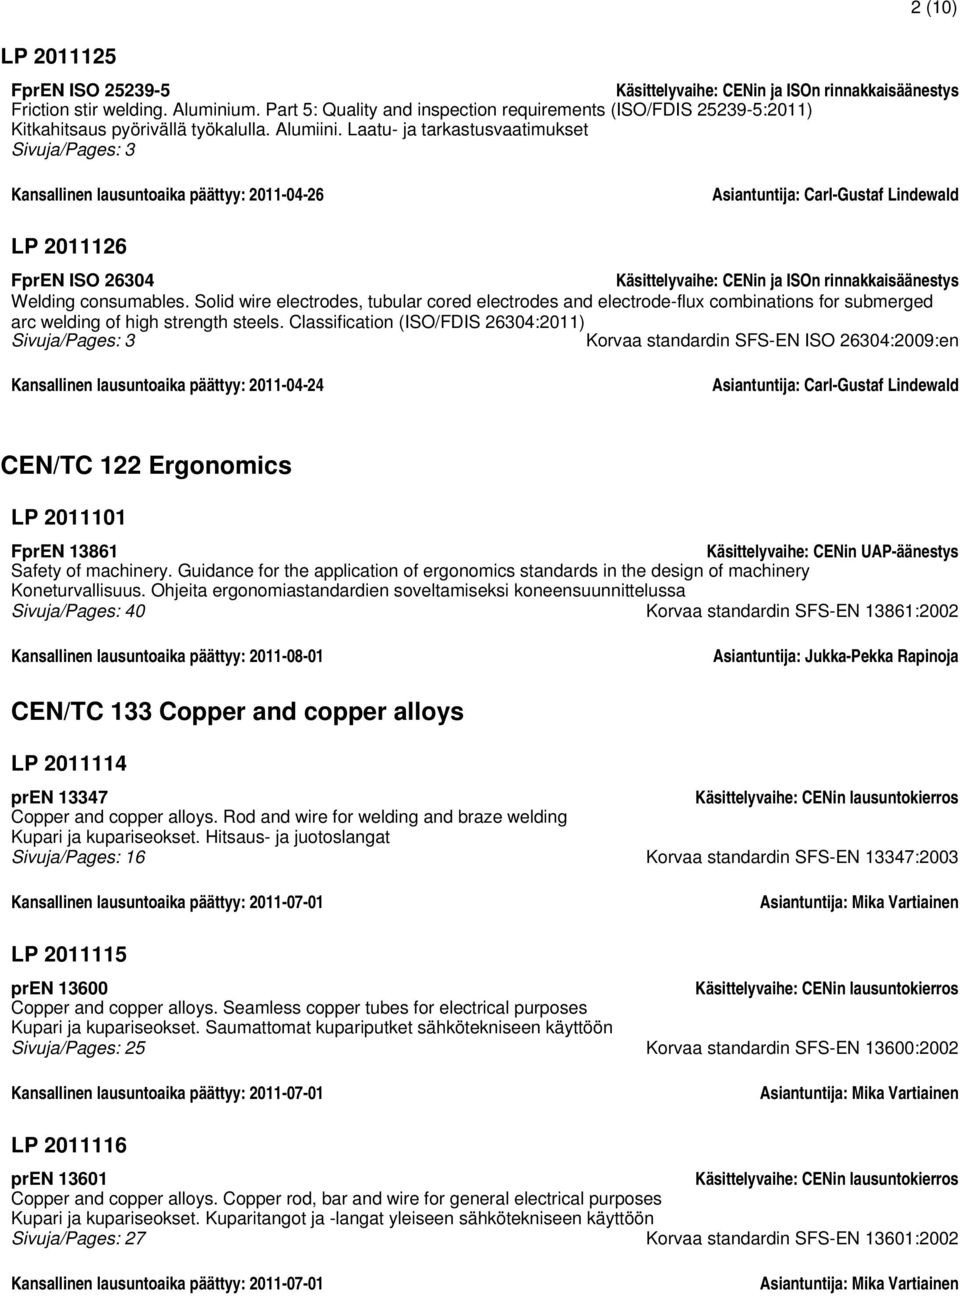 Laatu- ja tarkastusvaatimukset Sivuja/Pages: 3 Kansallinen lausuntoaika päättyy: 2011-04-26 Asiantuntija: Carl-Gustaf Lindewald LP 2011126 FprEN ISO 26304 Käsittelyvaihe: CENin ja ISOn